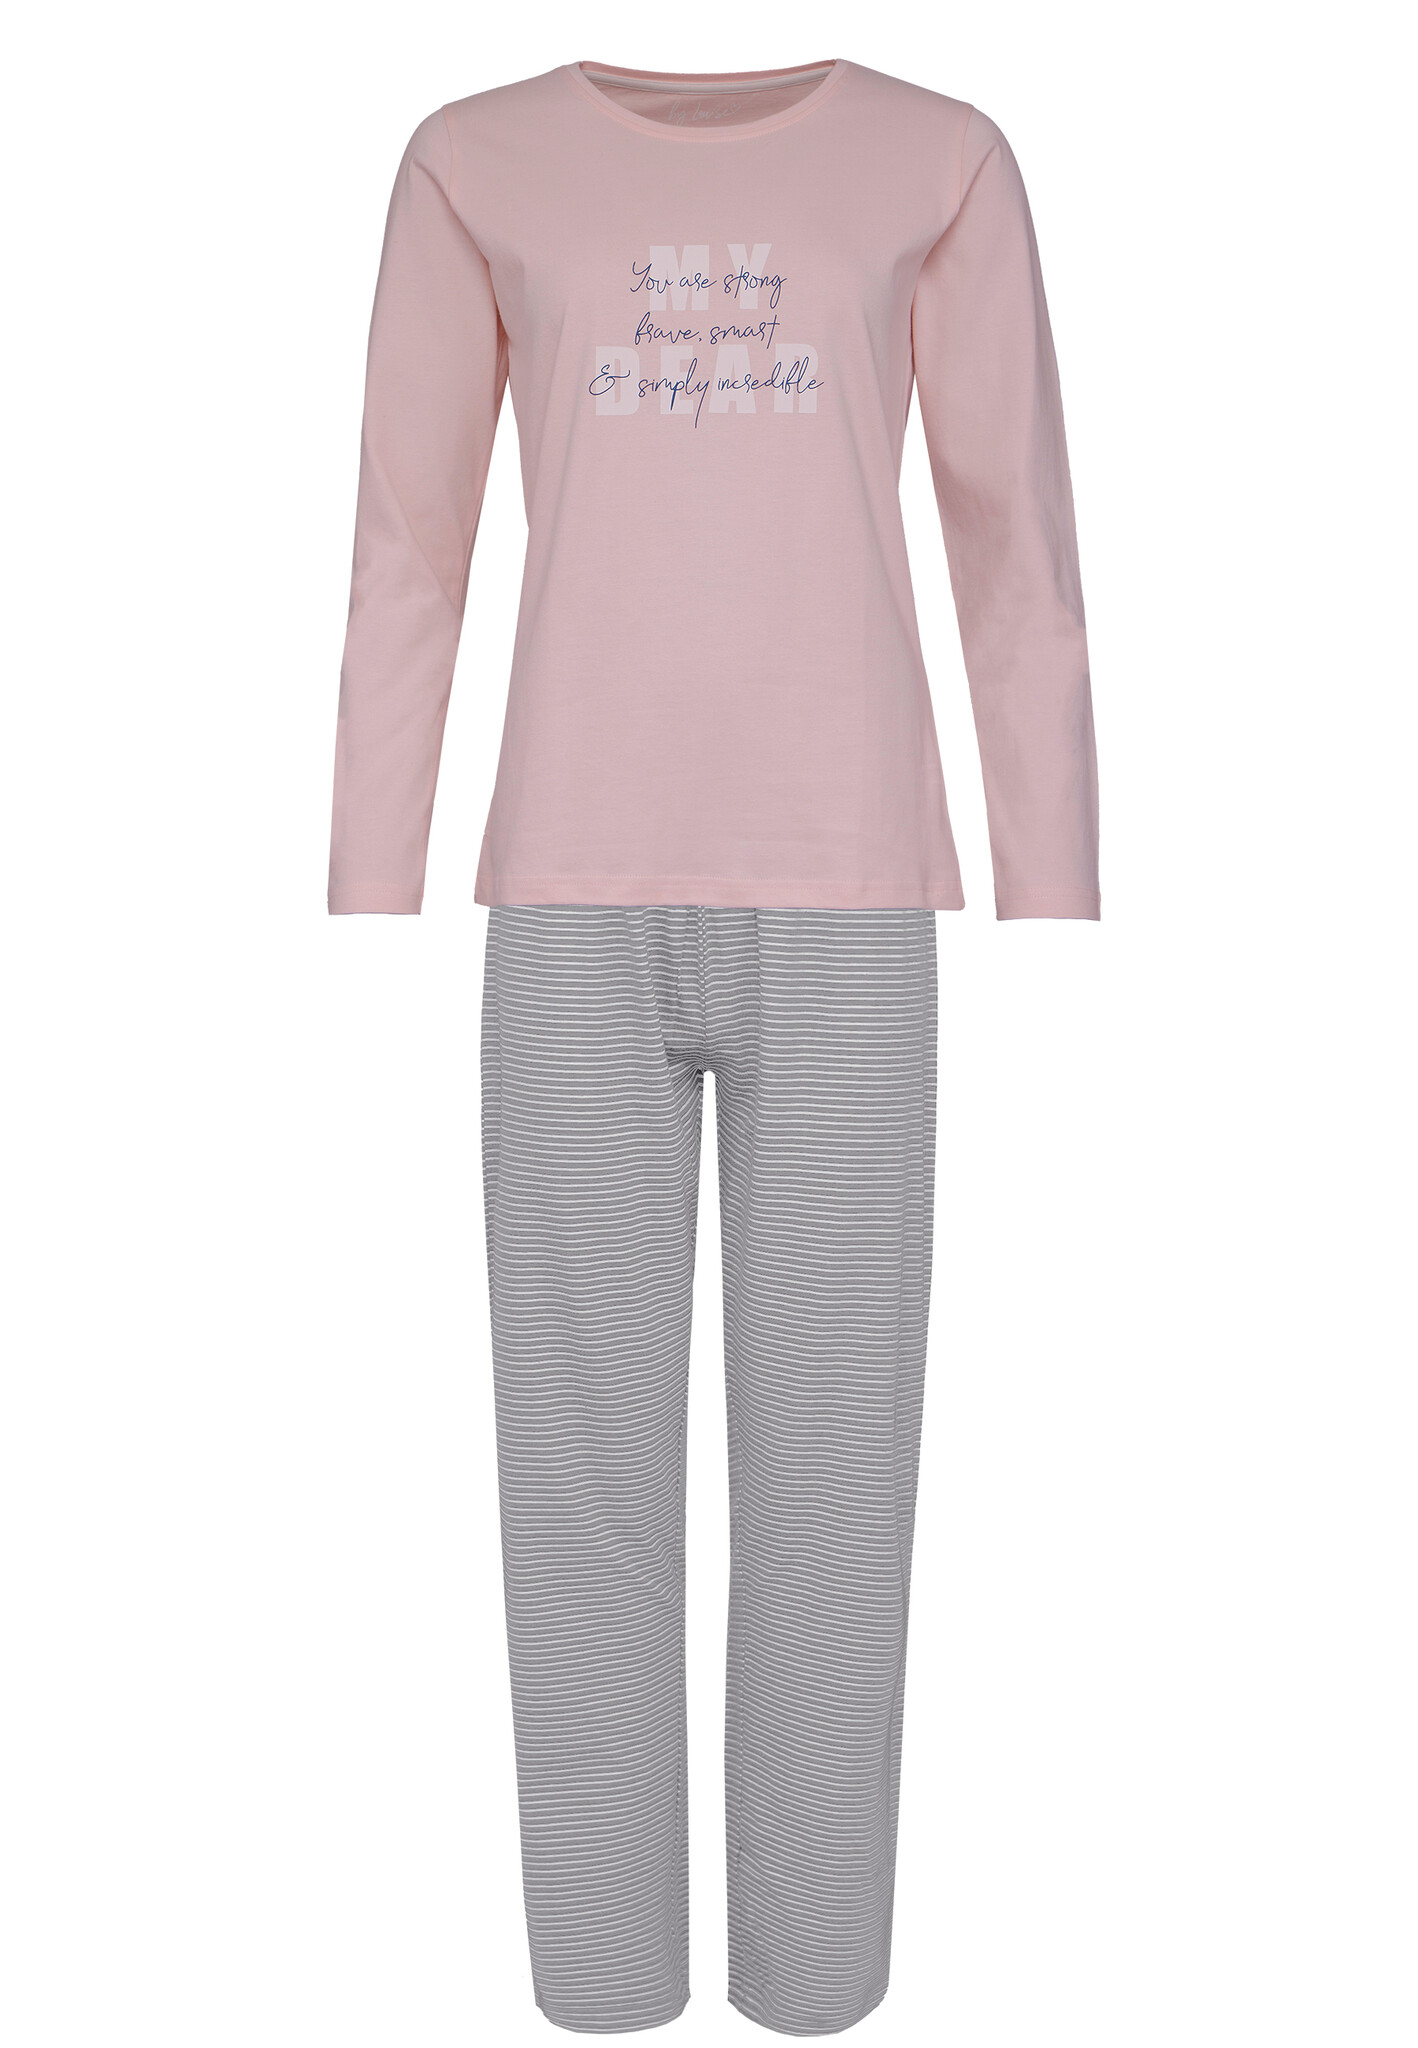 Afbeelding van By Louise Dames pyjama set lang katoen roze / grijs gestreept